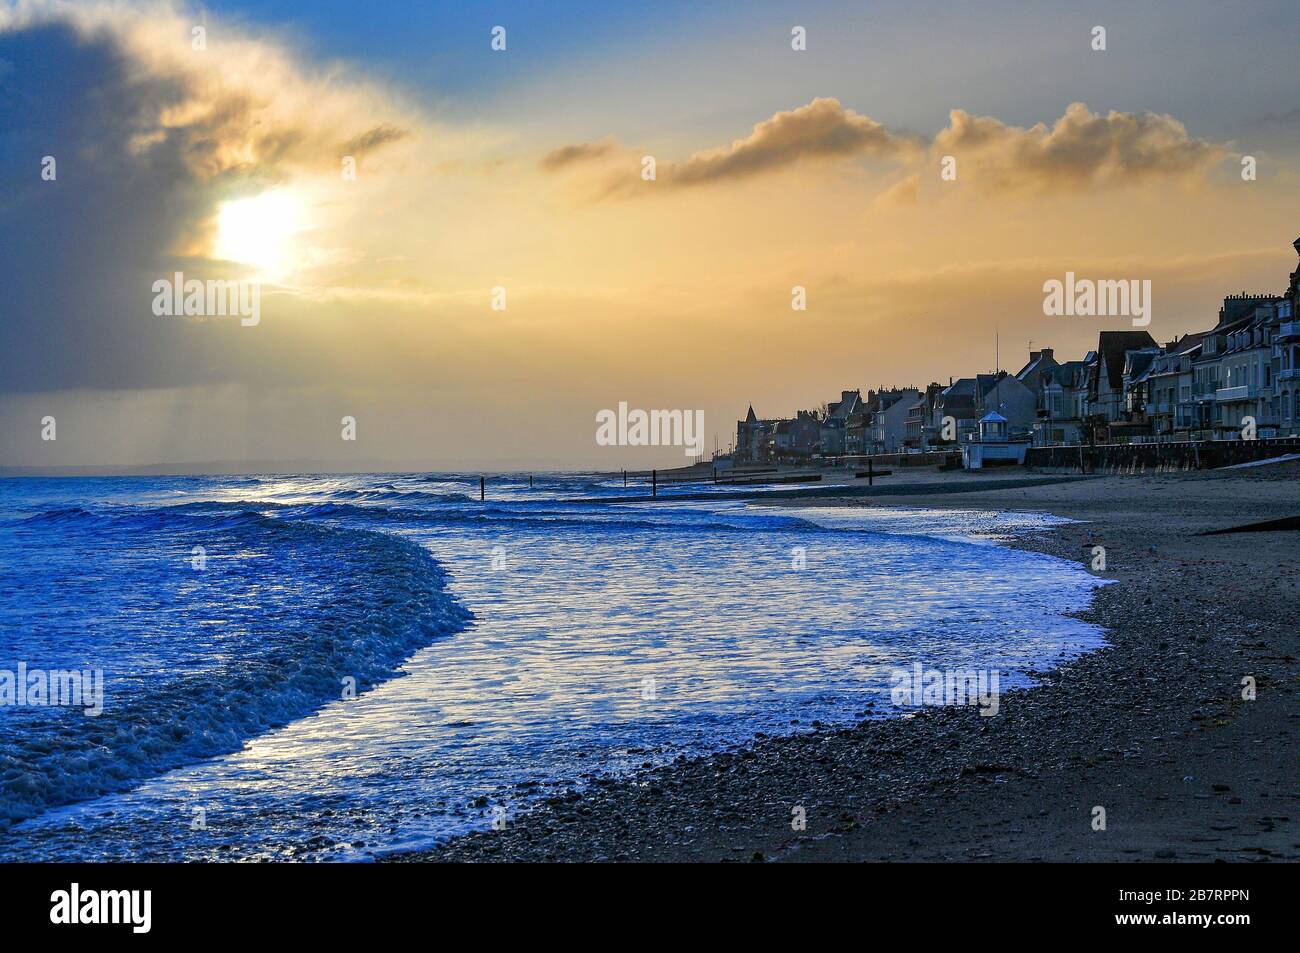 La plage de Saint-Aubin-sur-Mer dans le département du Calvados en Normandie au lever du soleil, France, Europe Banque D'Images